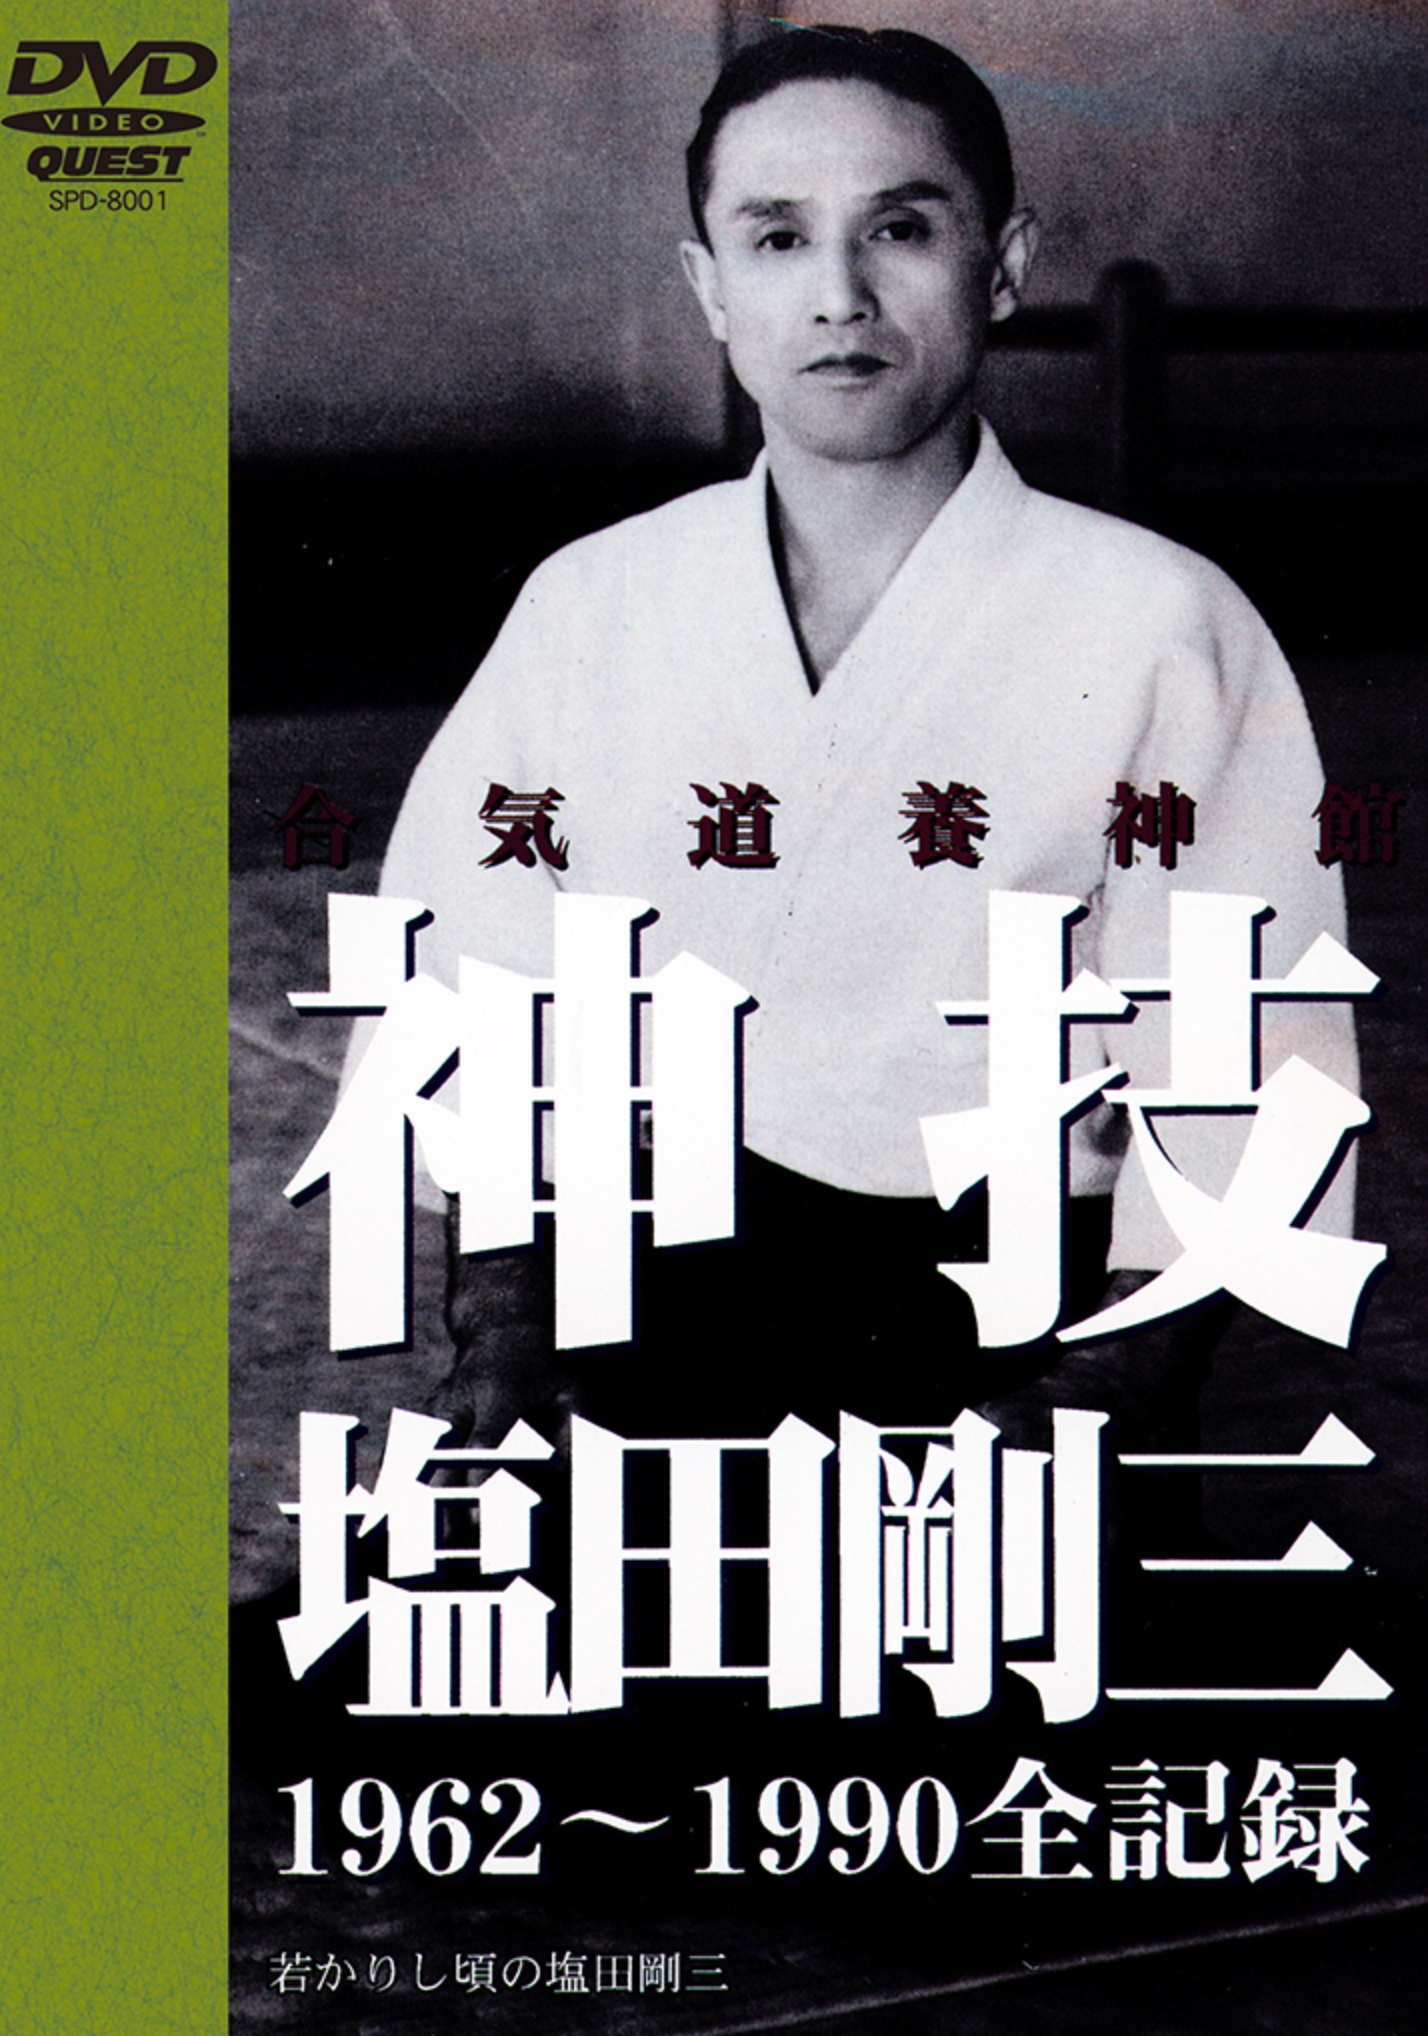 Gozo Shioda: Kamiwaza DVD (Yoshinkan) - Budovideos Inc